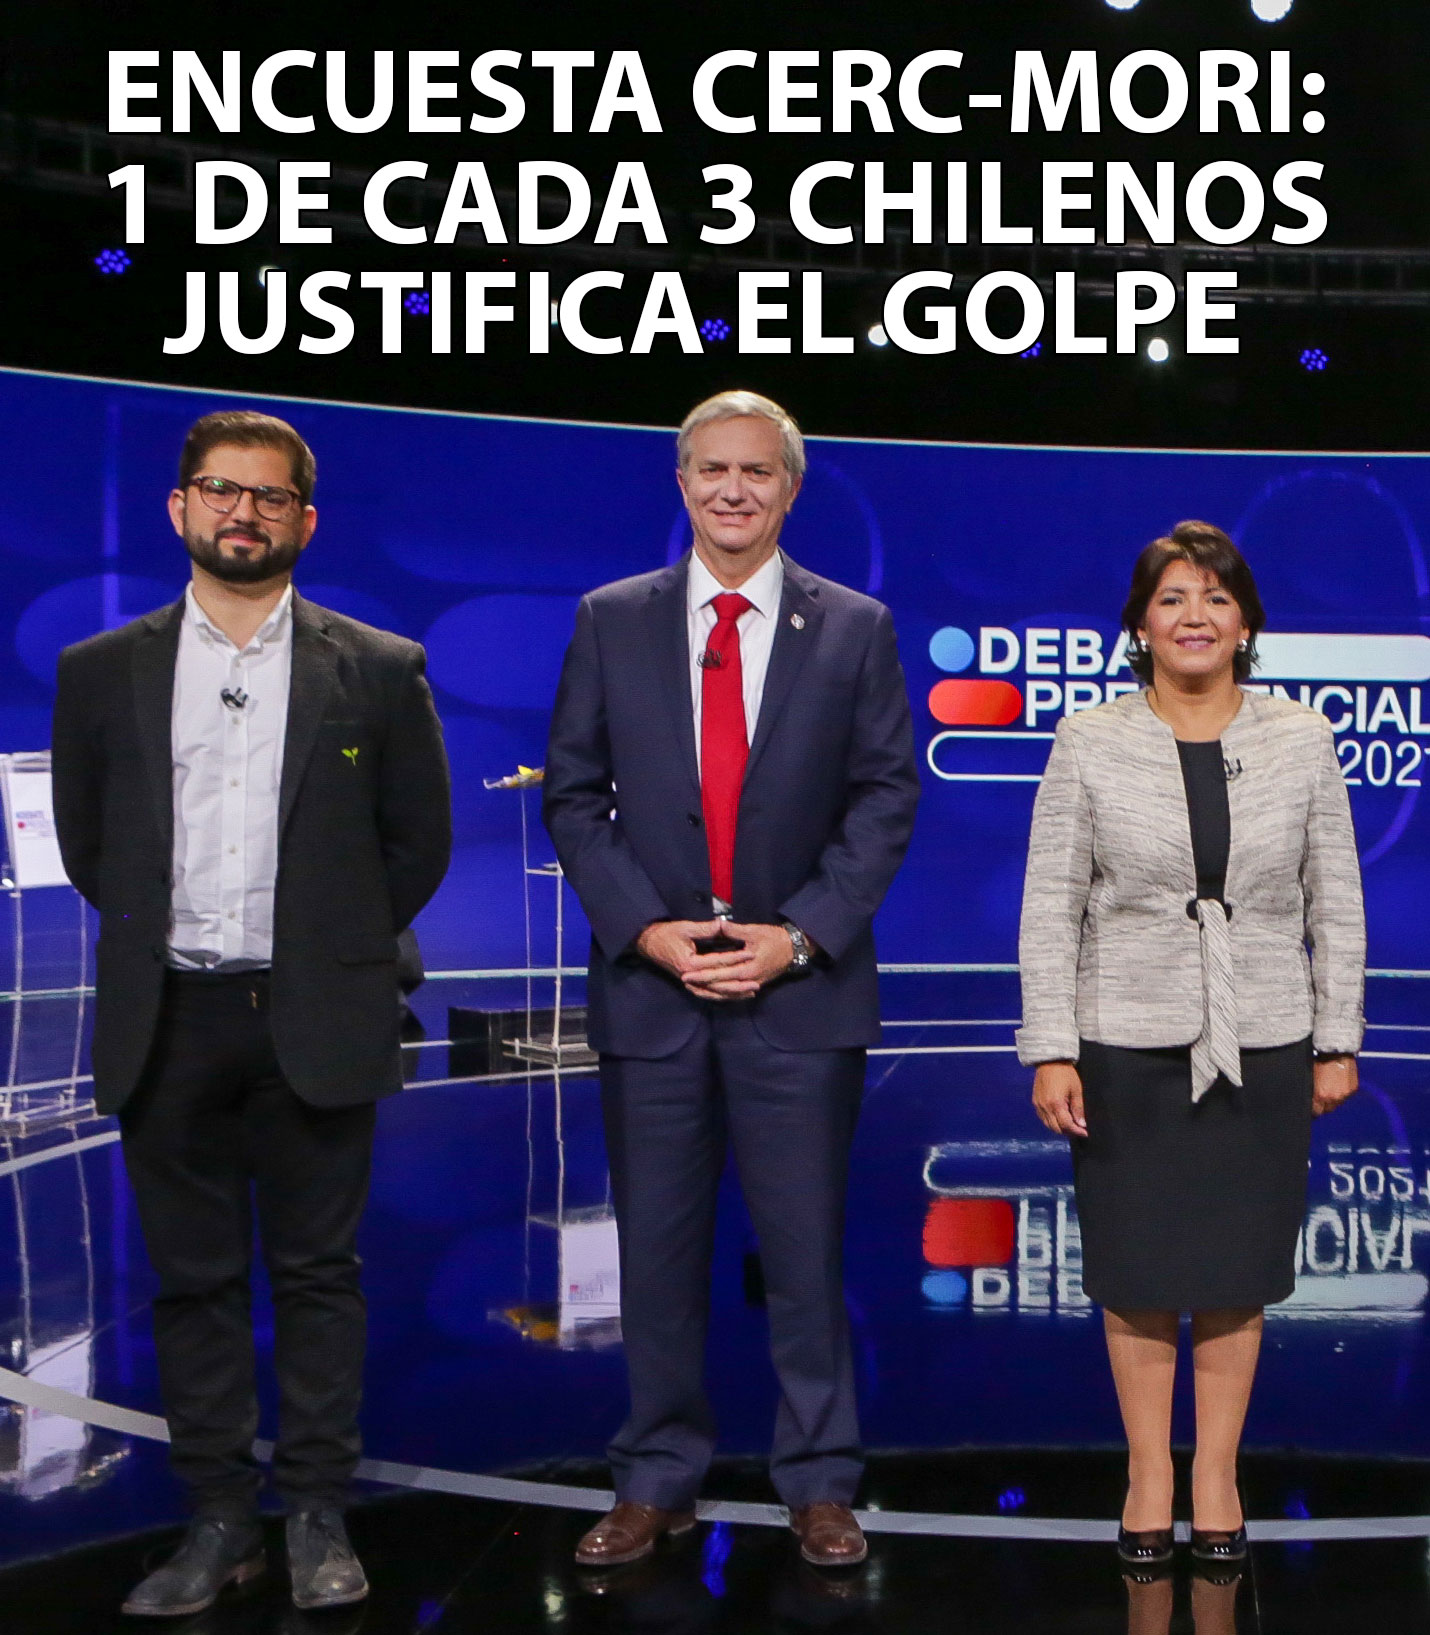 HUMOR. ¿El 36% de los chileno justifica el golpe? Encuesta Cerc-Mori explicada gráficamente